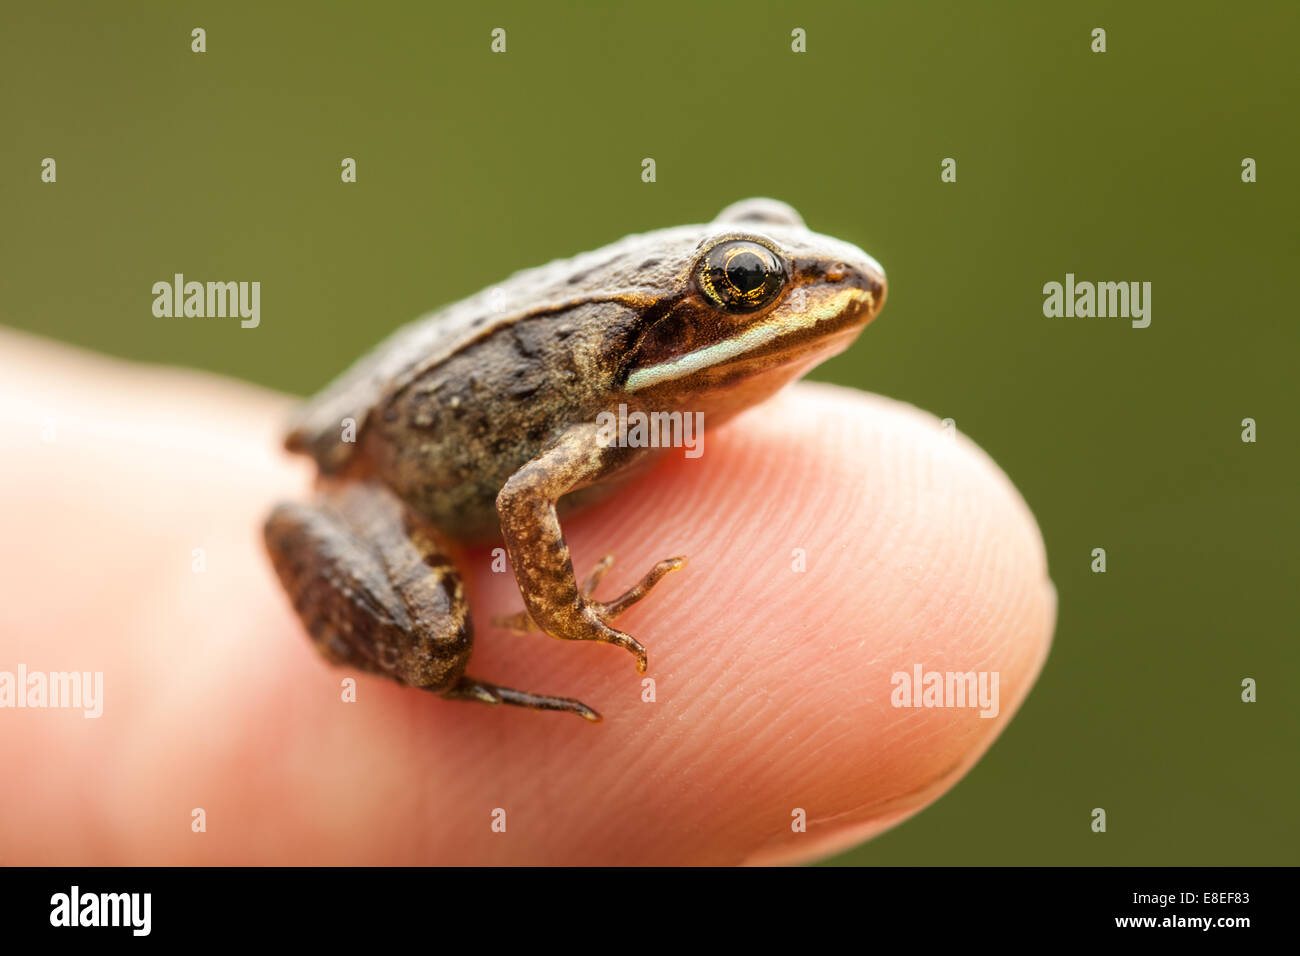 À partir de la Miniature assis sur un bout de doigt (index) afin que nous puissions voir comment la grenouille est petit Banque D'Images